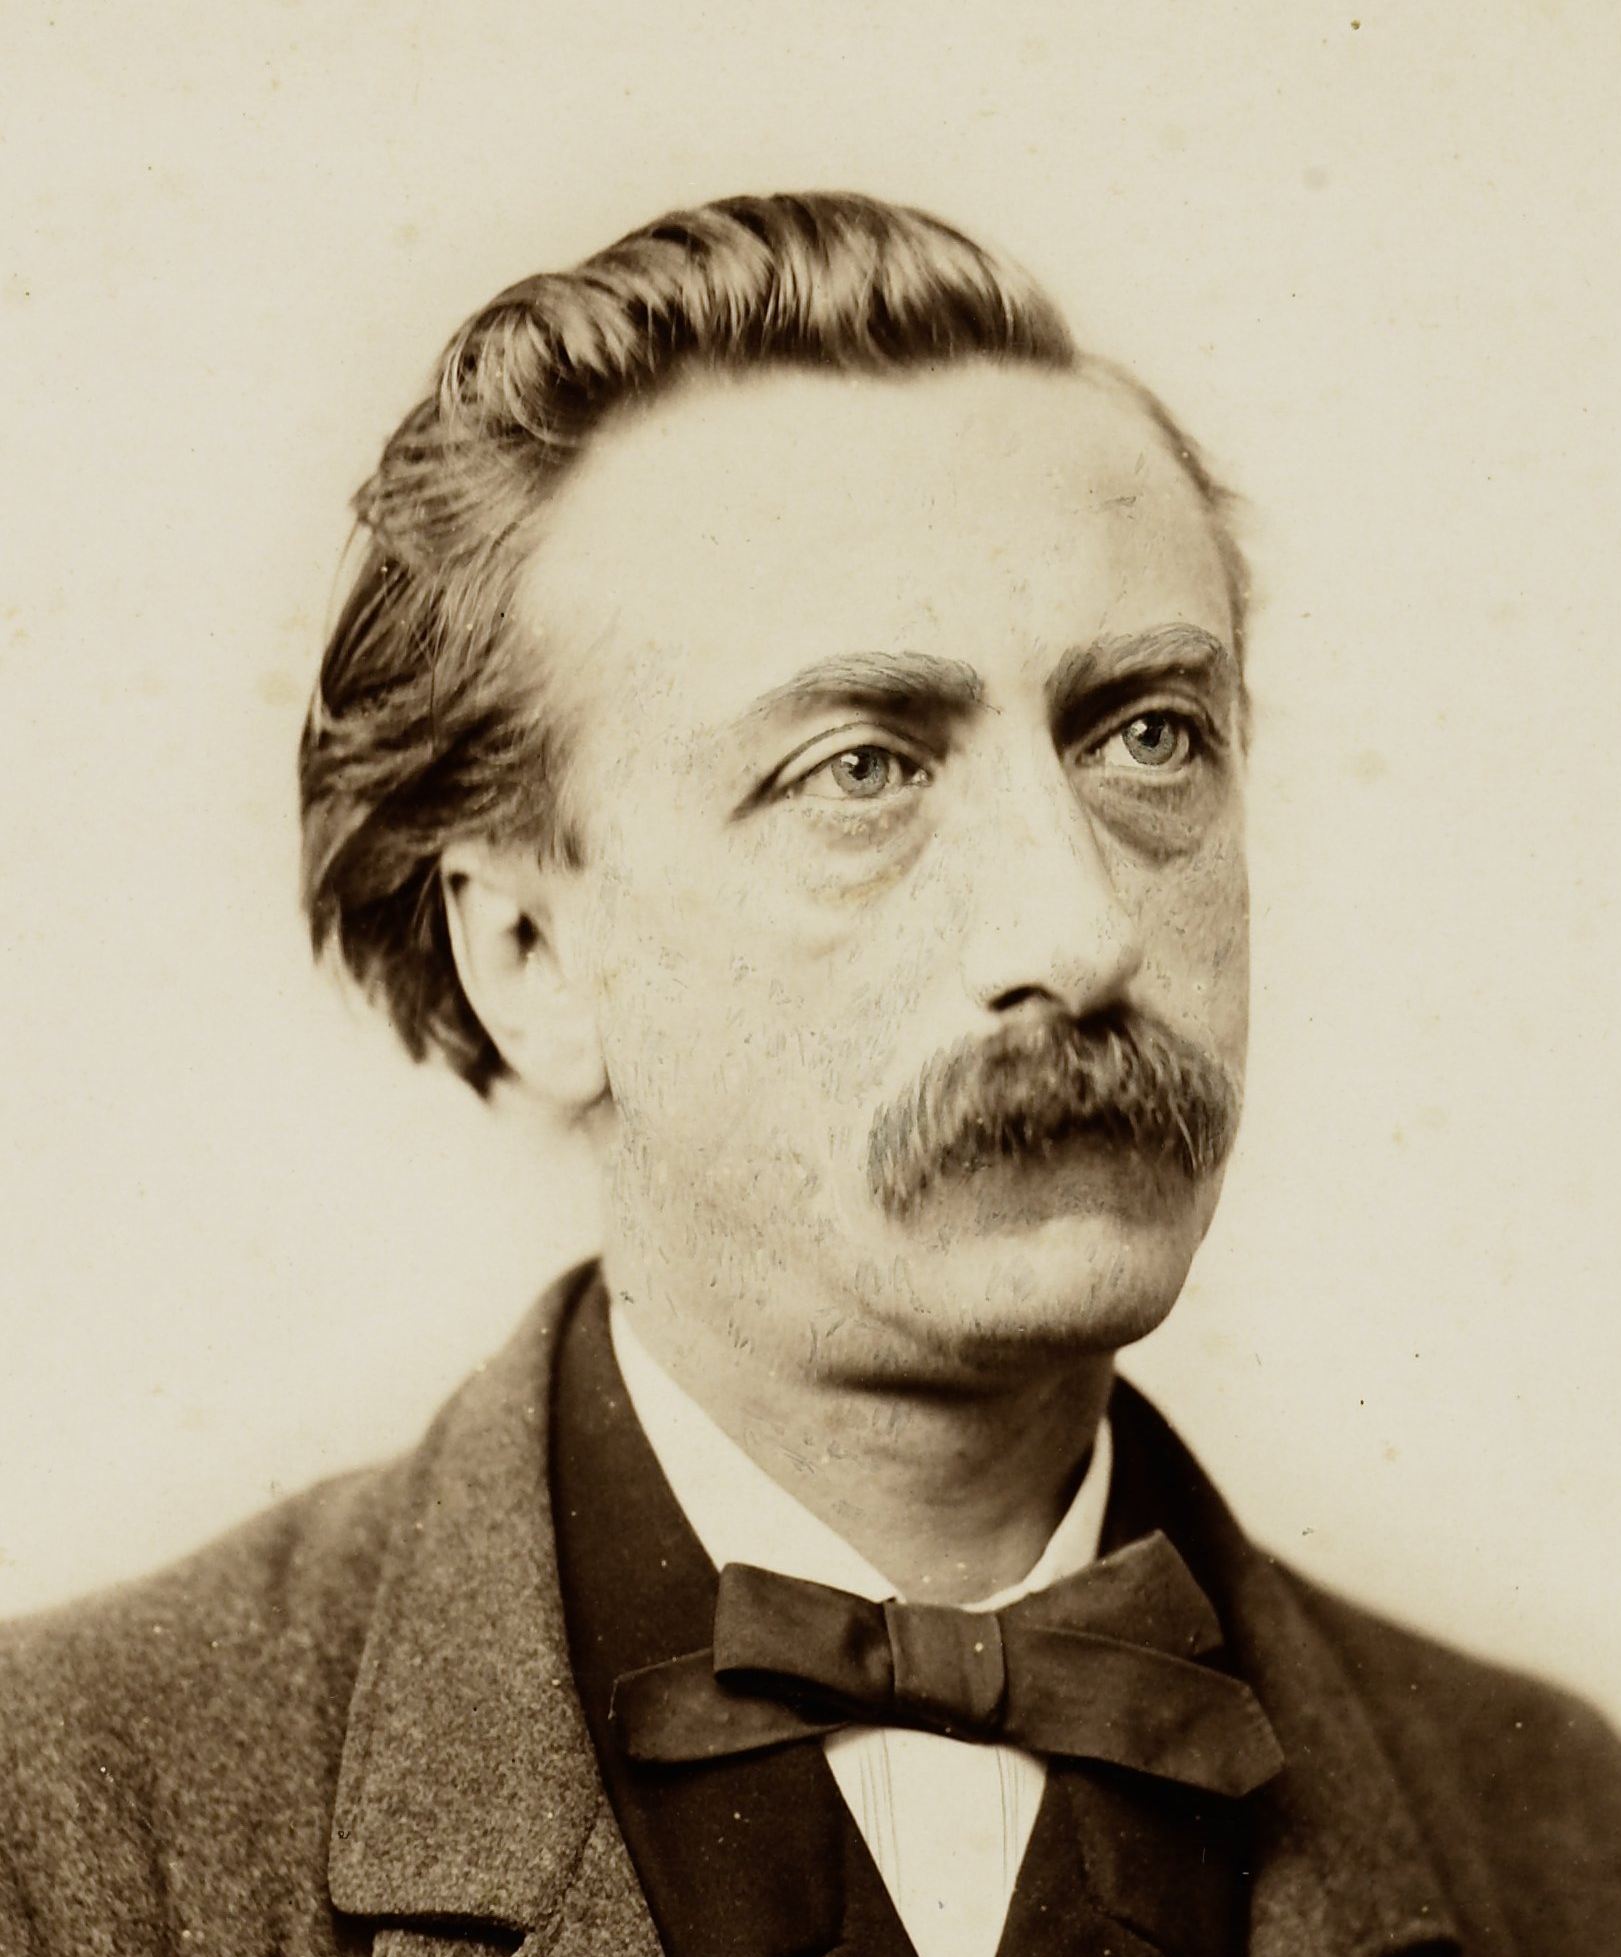 Eduard Douwes Dekker, also known as Multatuli in 1864